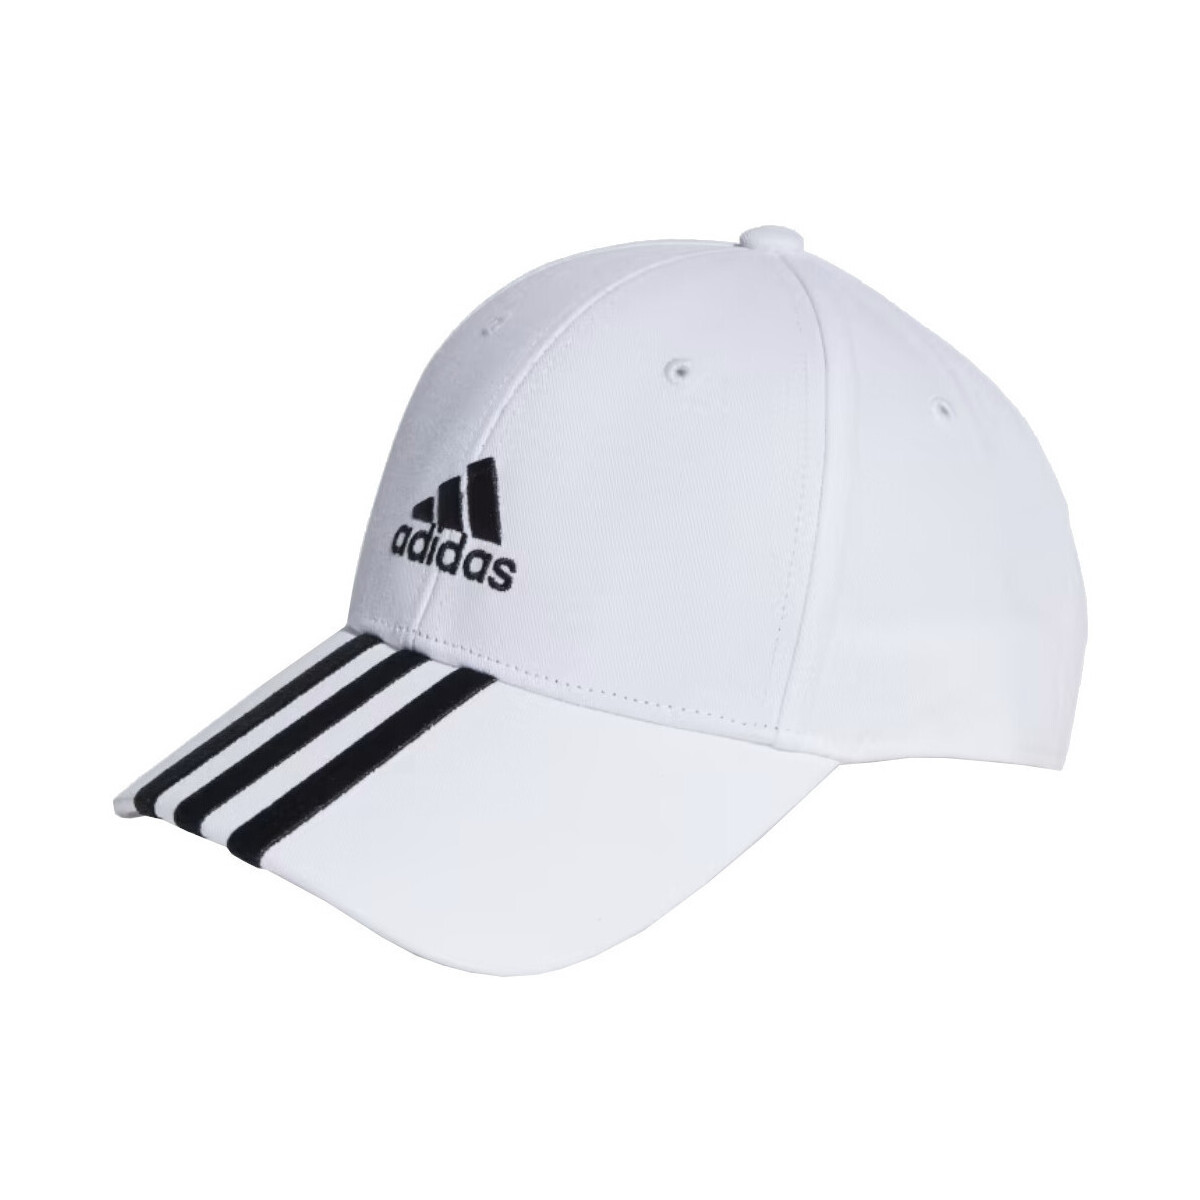 Accessori Cappelli adidas Originals II3509 Bianco